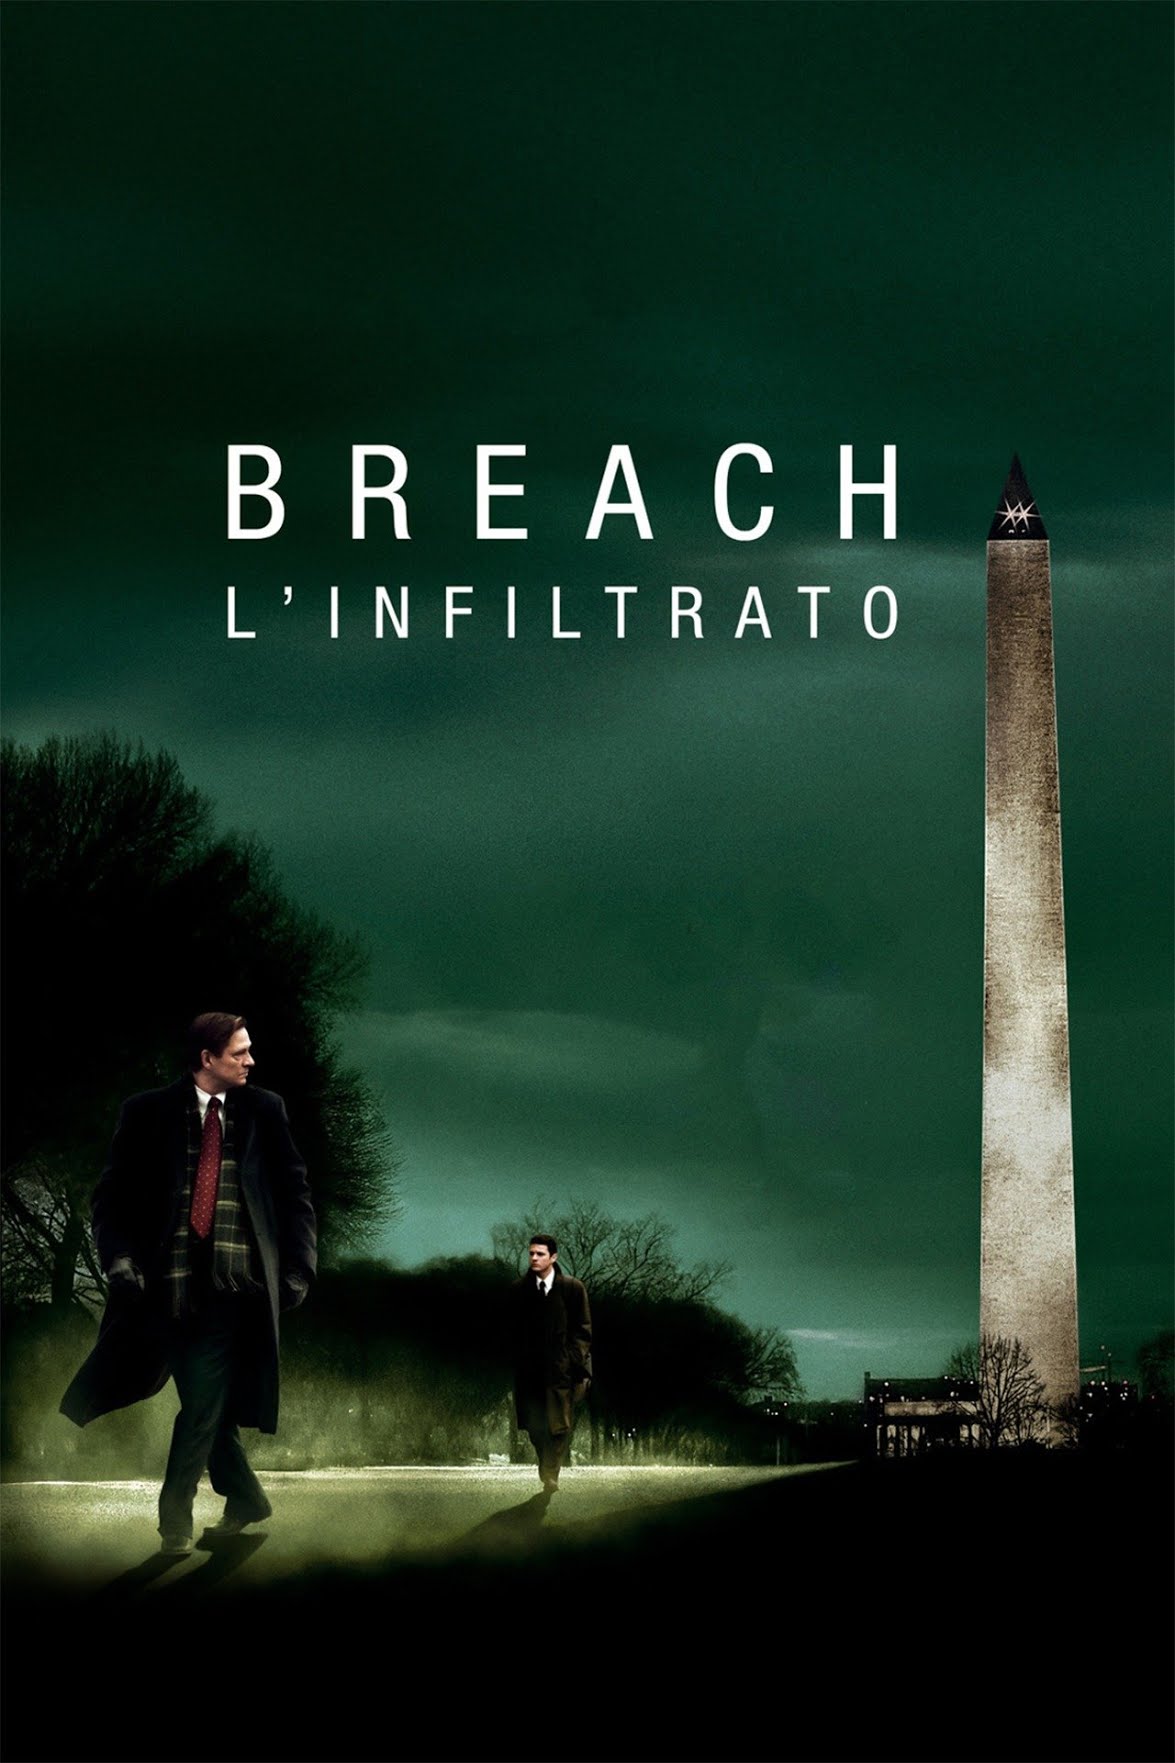 Breach – L’infiltrato [HD] (2007)